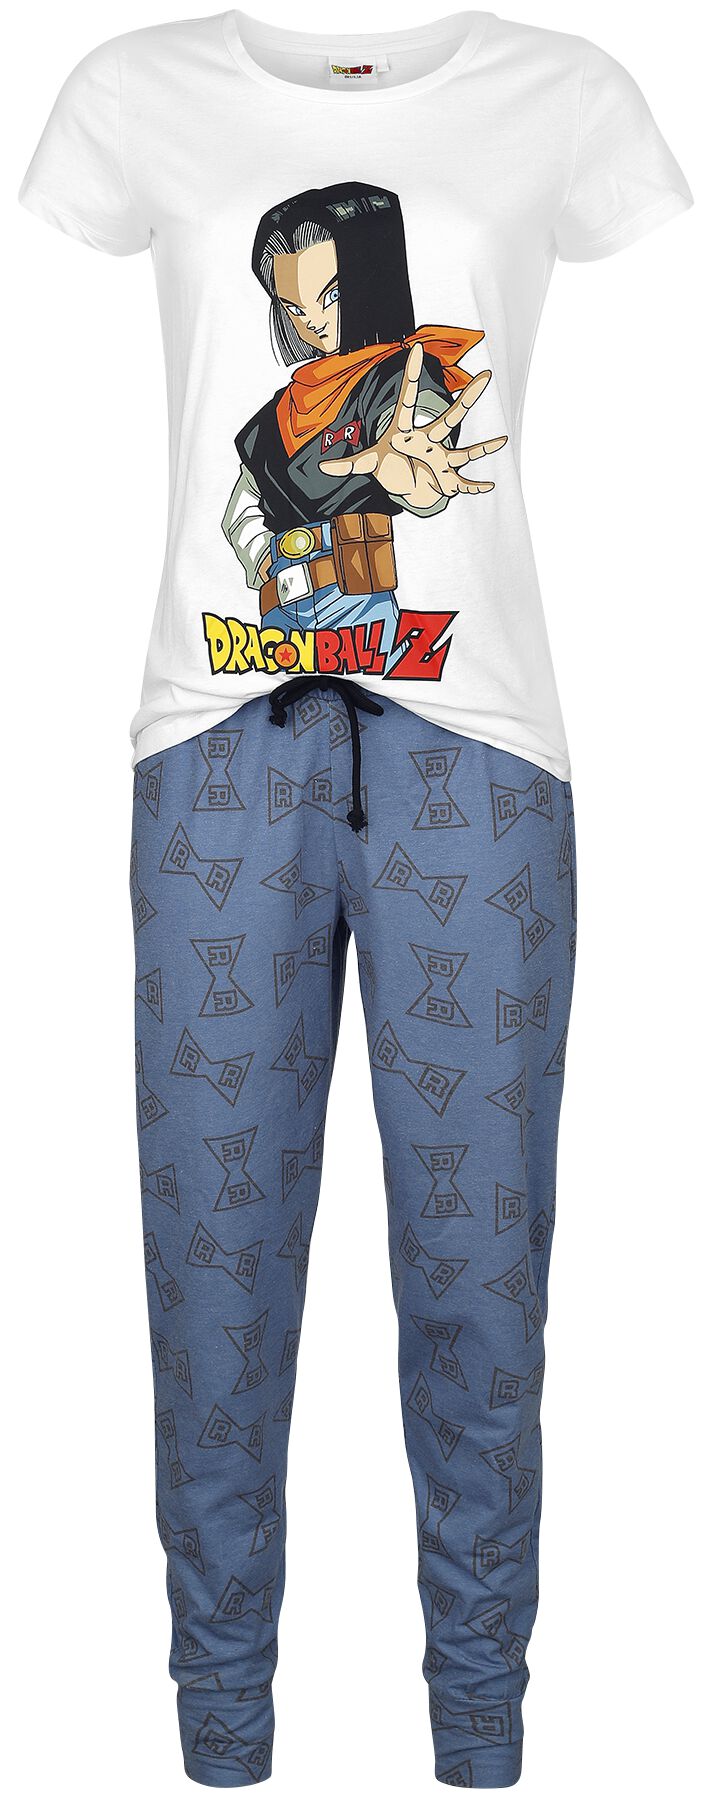 Dragon Ball - Gaming Schlafanzug - Z - Android 17 - S bis 3XL - für Damen - Größe L - weiß/blau  - EMP exklusives Merchandise!